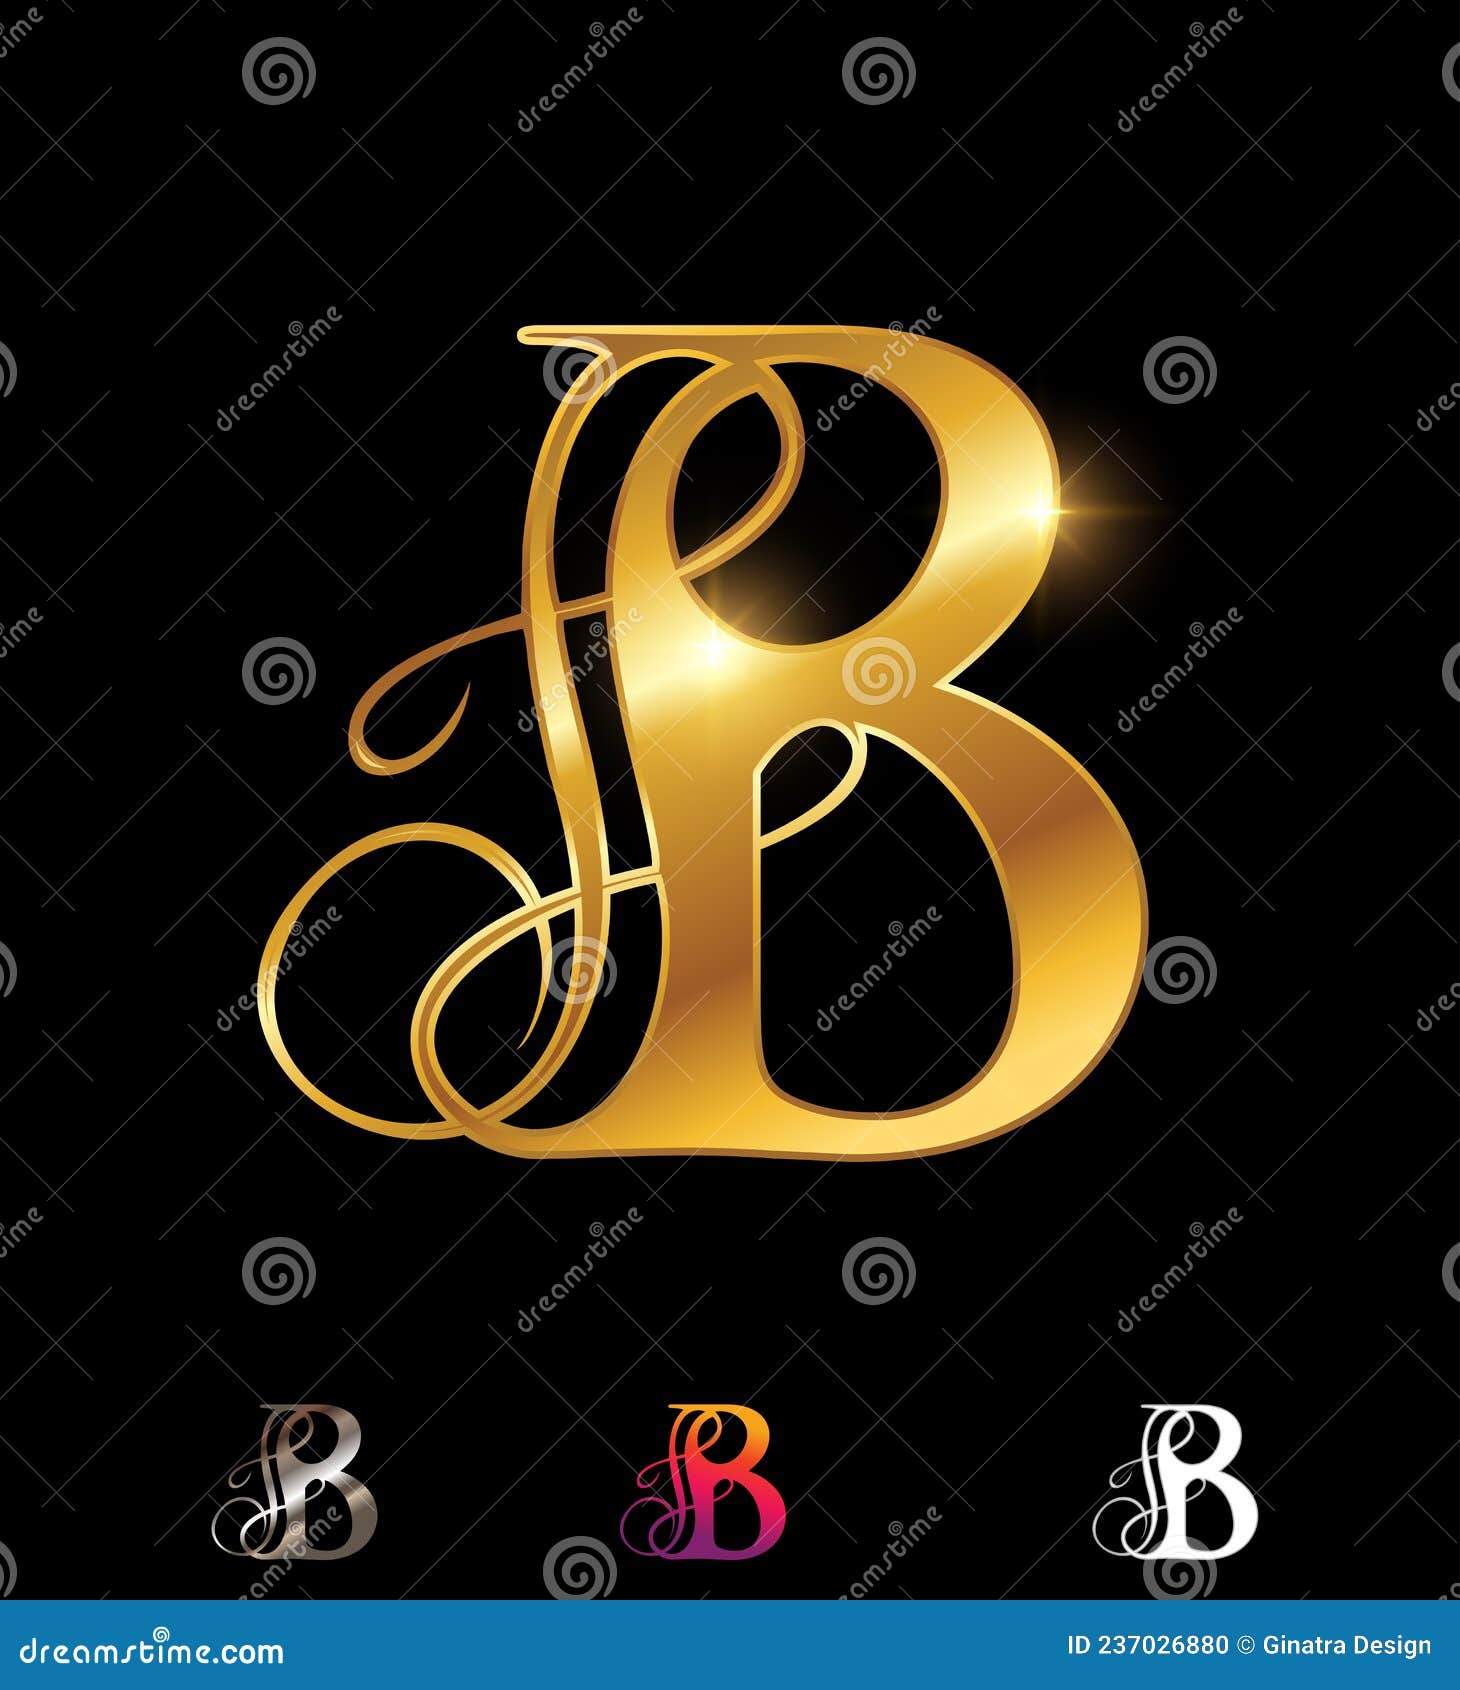 Golden Monogram Letter B stock vector. Illustration of golden - 237026880